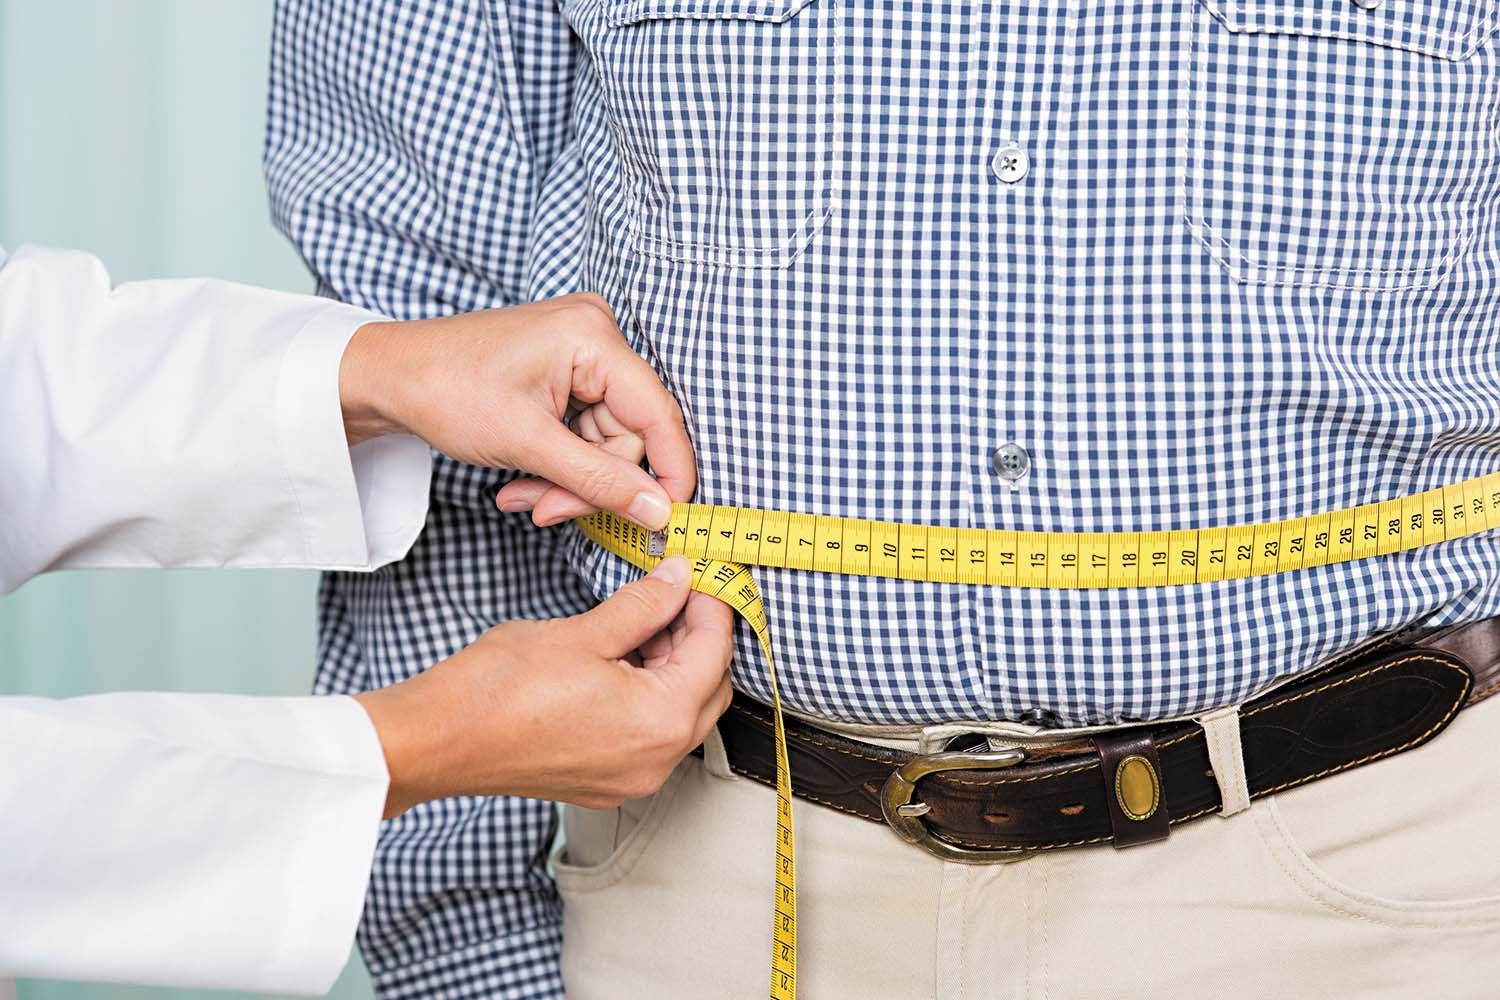 نصائح فعالة لـ«التخسيس في رمضان» وخسارة وزنك الزائد بخطوات سهلة وبسيطة